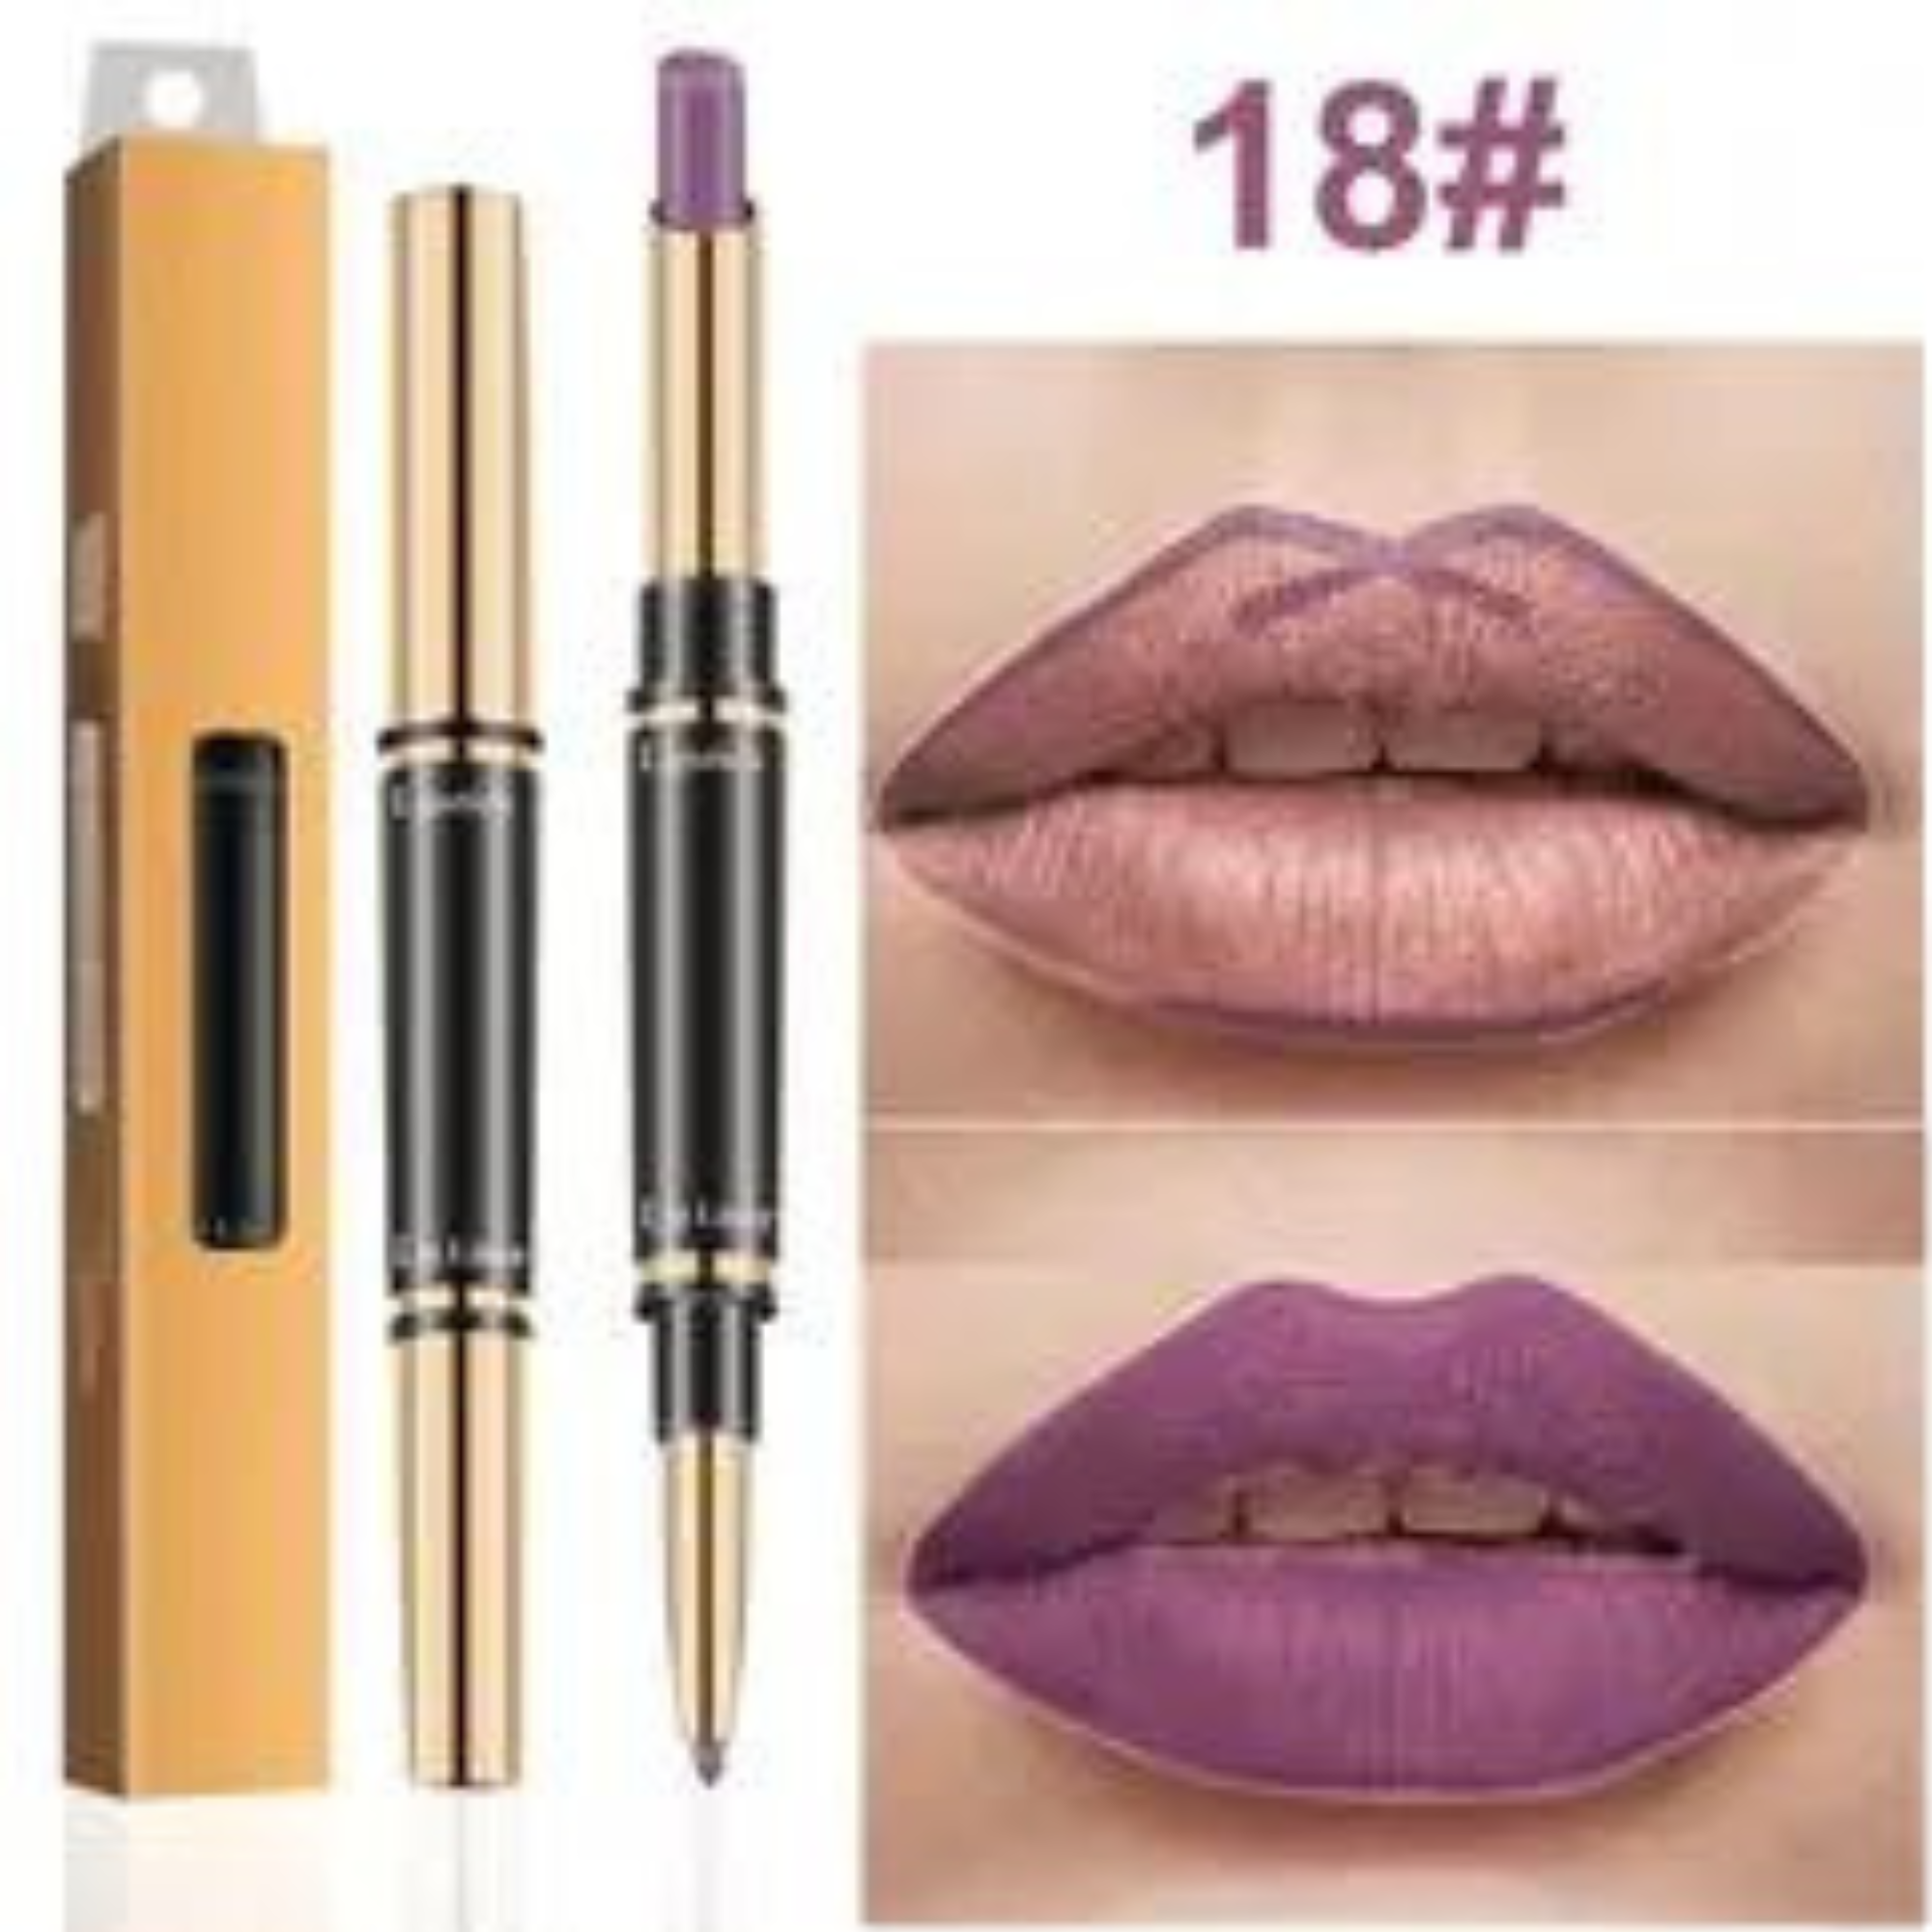 Cueen 2-in-1 Pencil Lipstick and Lipliner